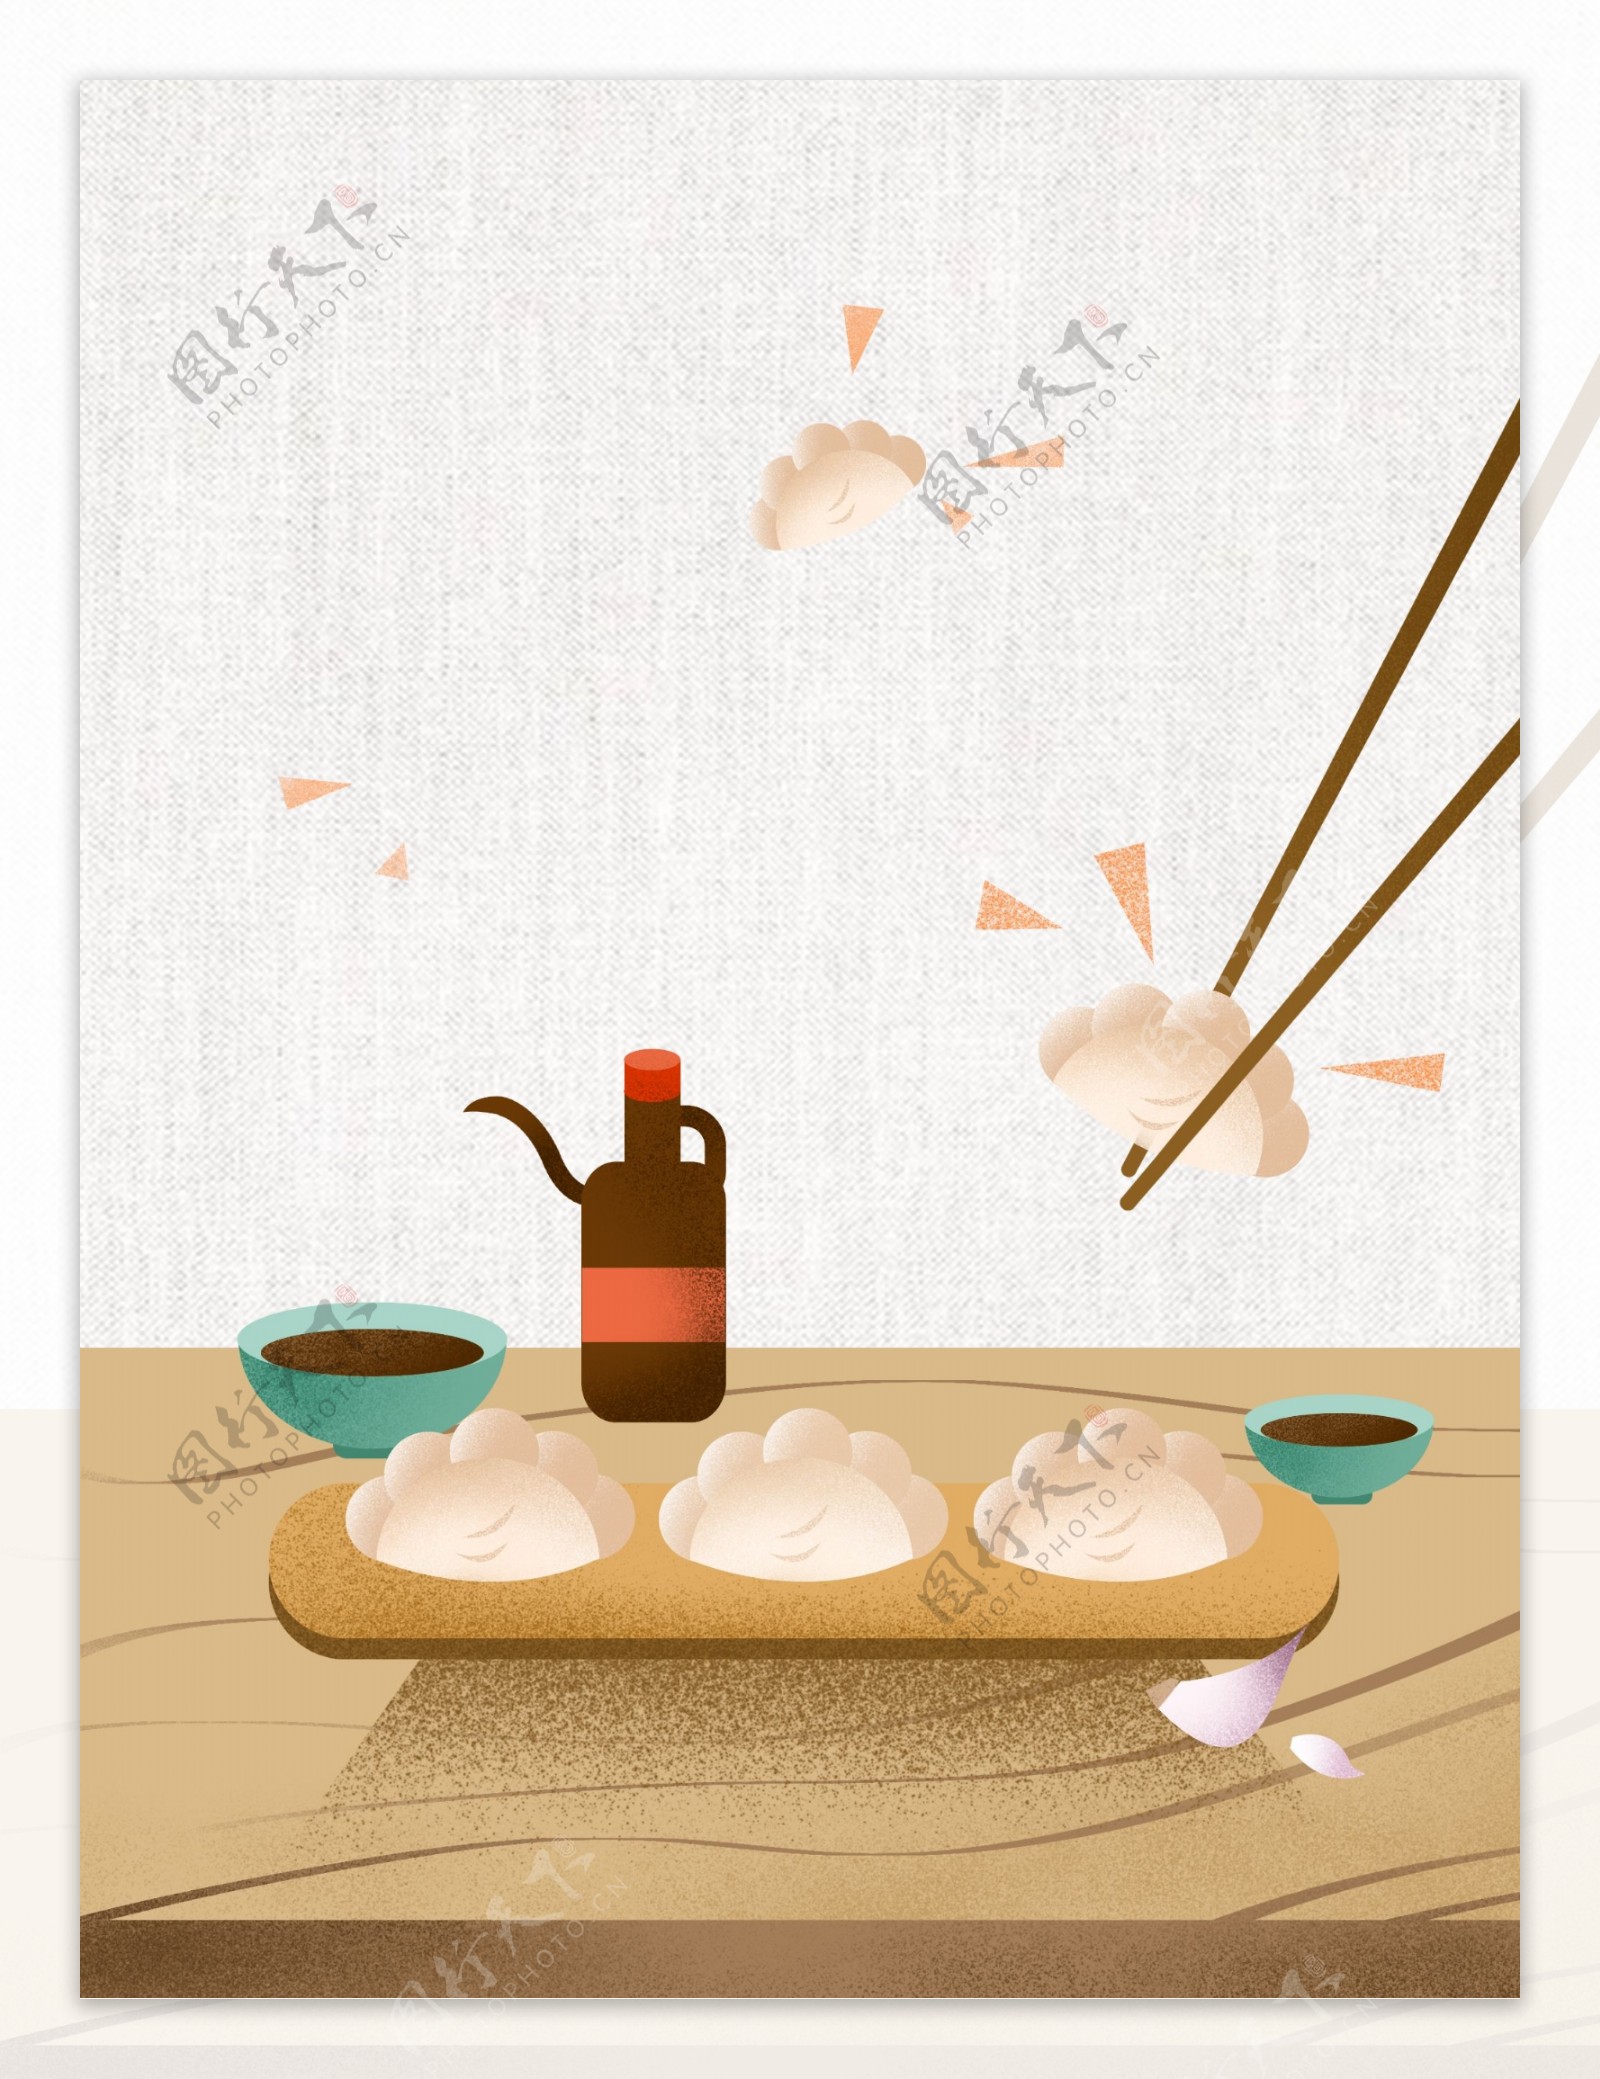 冬至吃饺子手绘背景素材